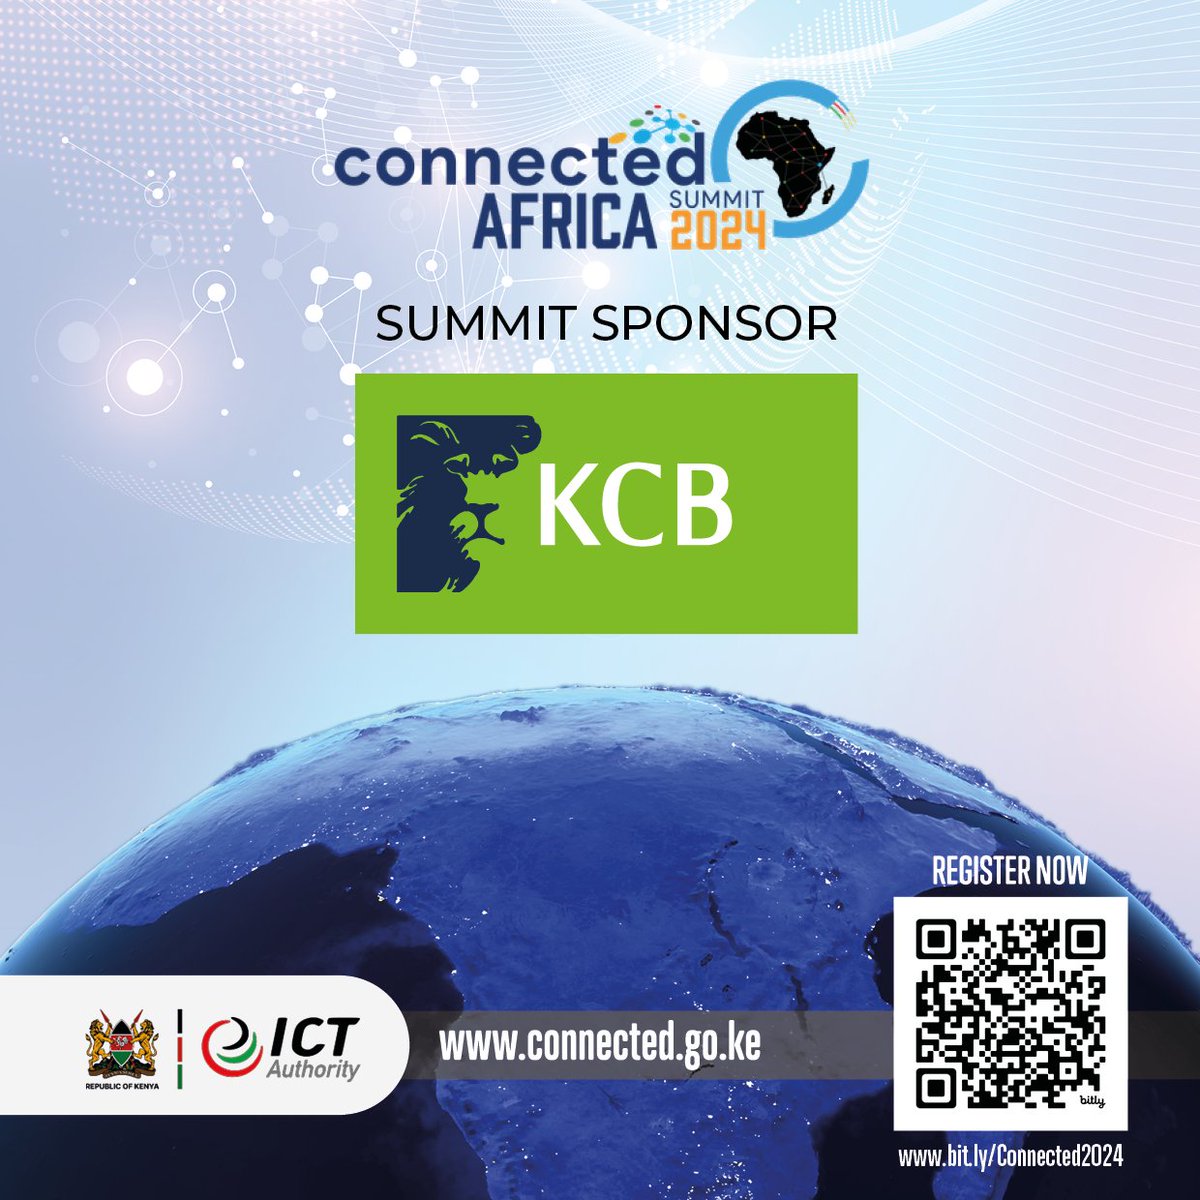 Don't miss out on the chance to shape Africa's digital future at the #ConnectedAfricaSummit2024! Jiunge sasa kwenye mkutano wa kisasa wa Afrika.